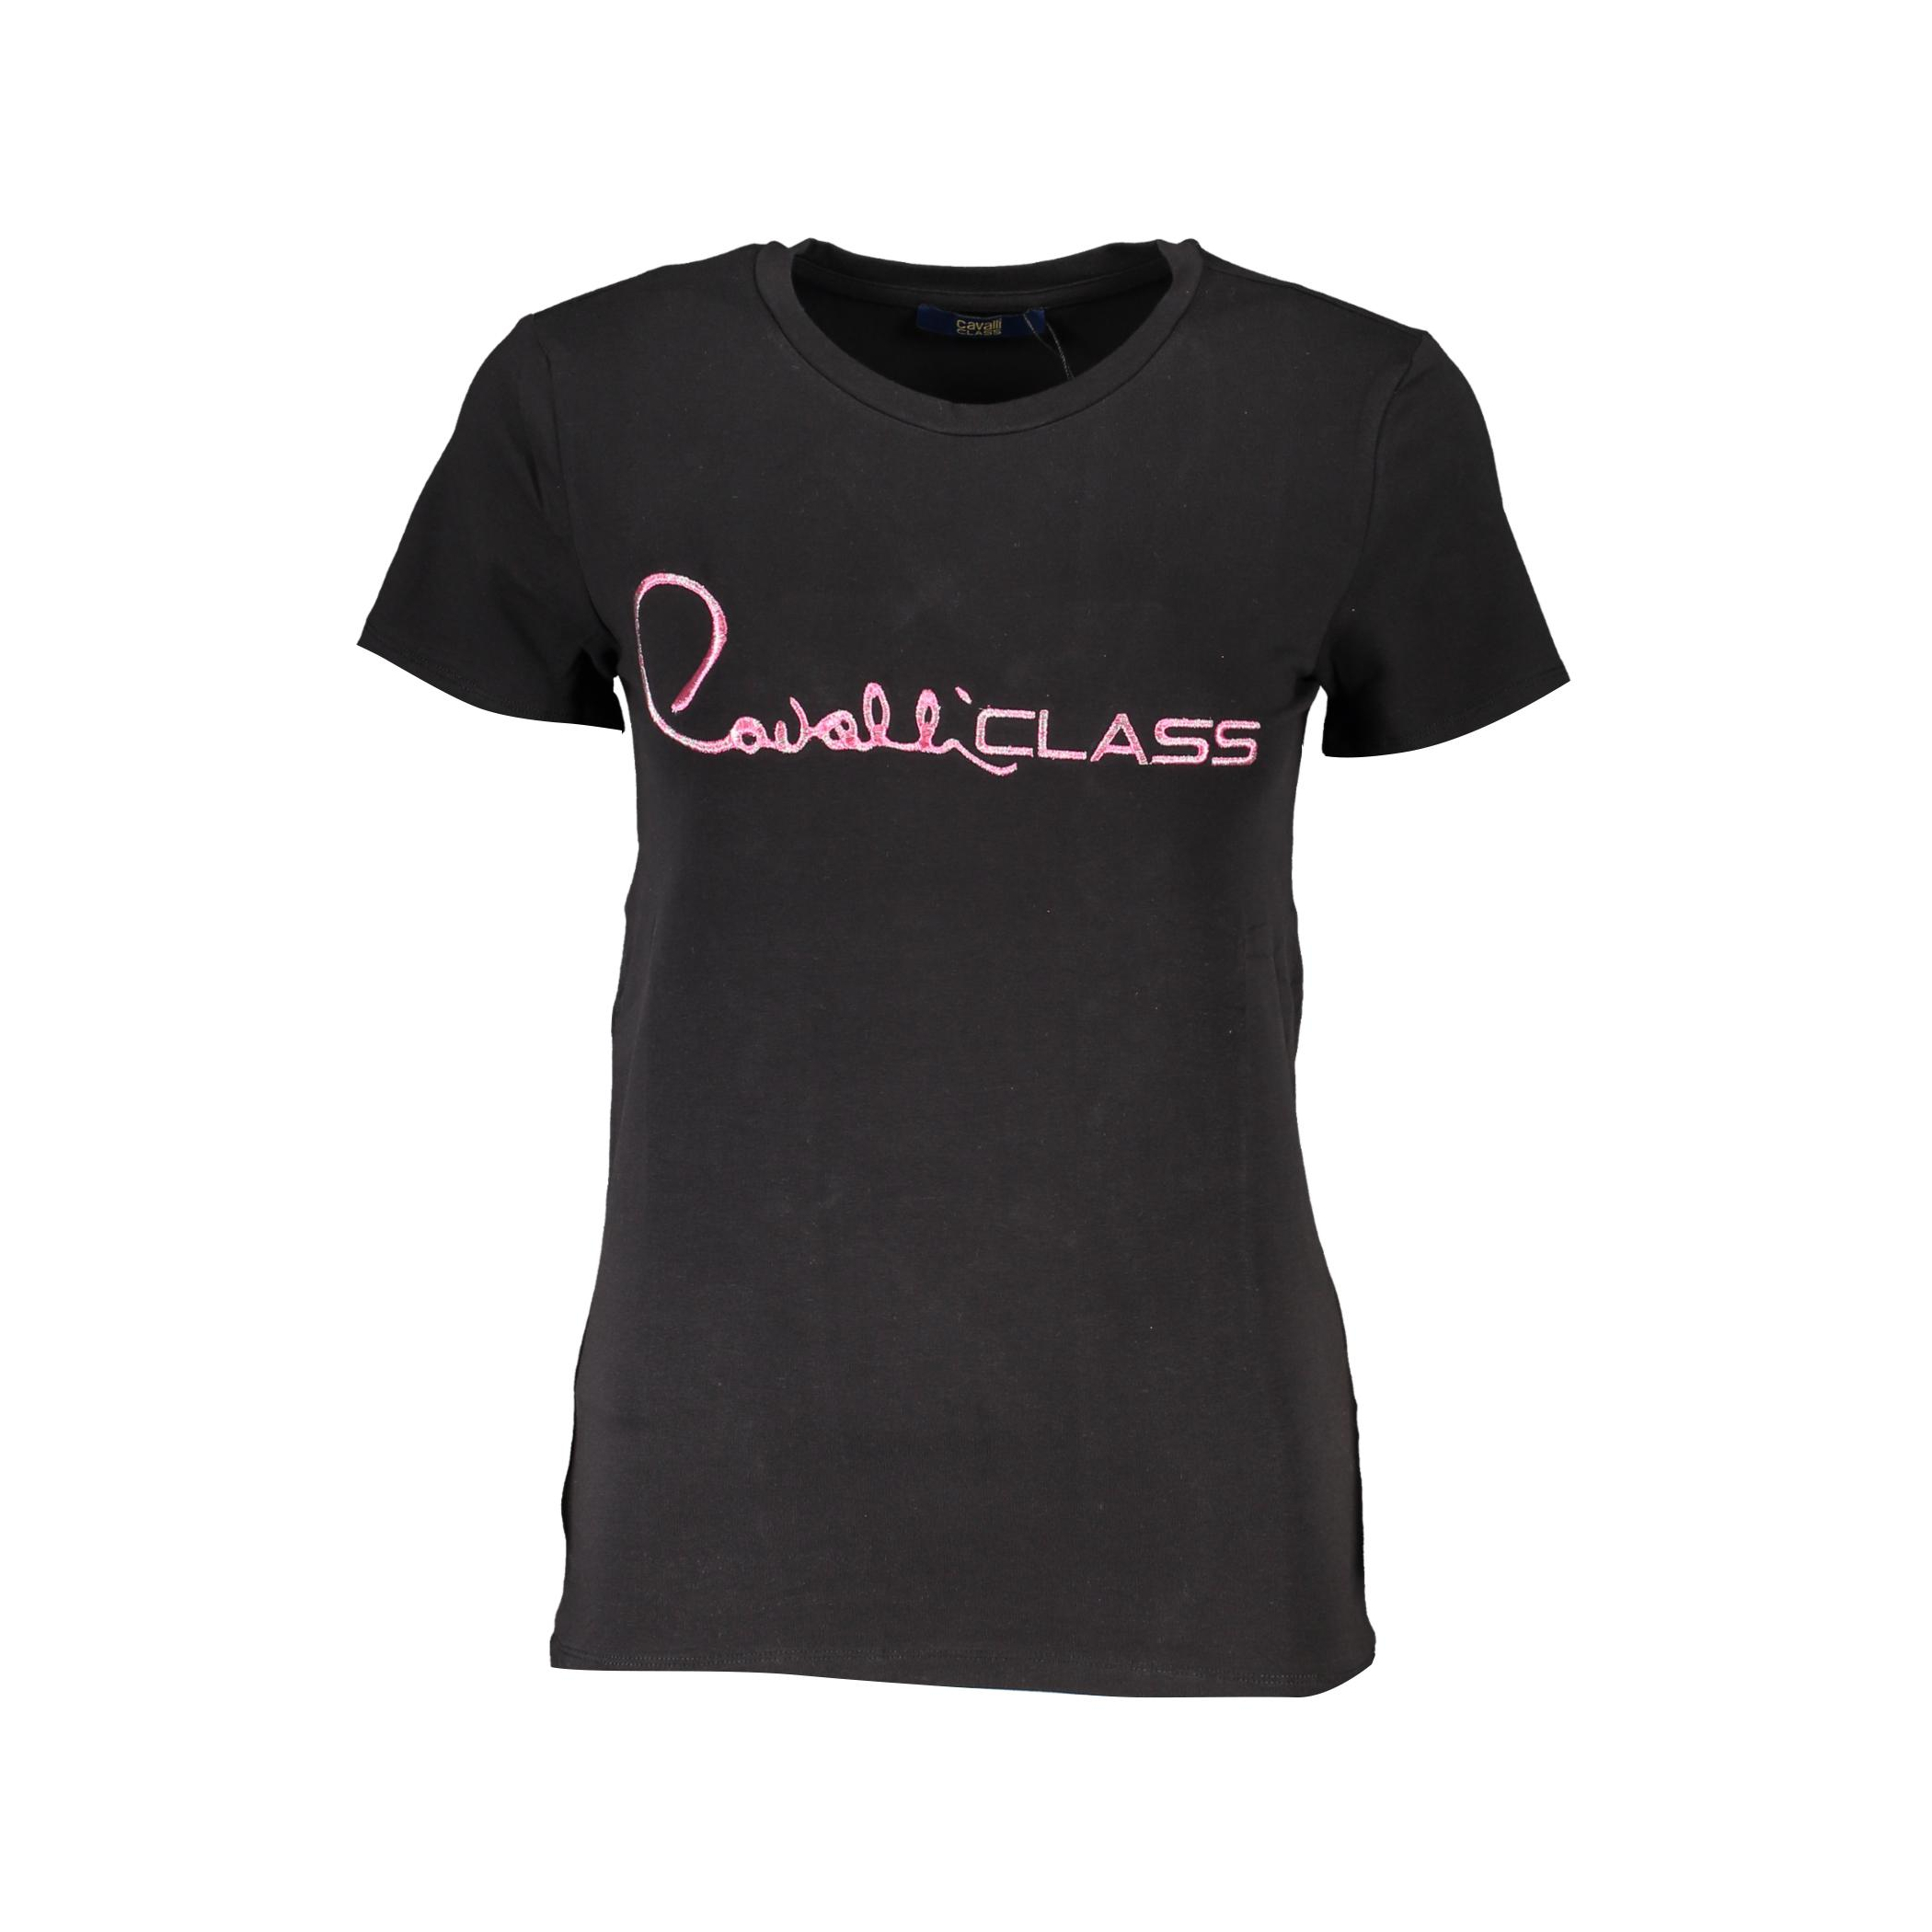 Снимка на Дамска тениска CAVALLI CLASS